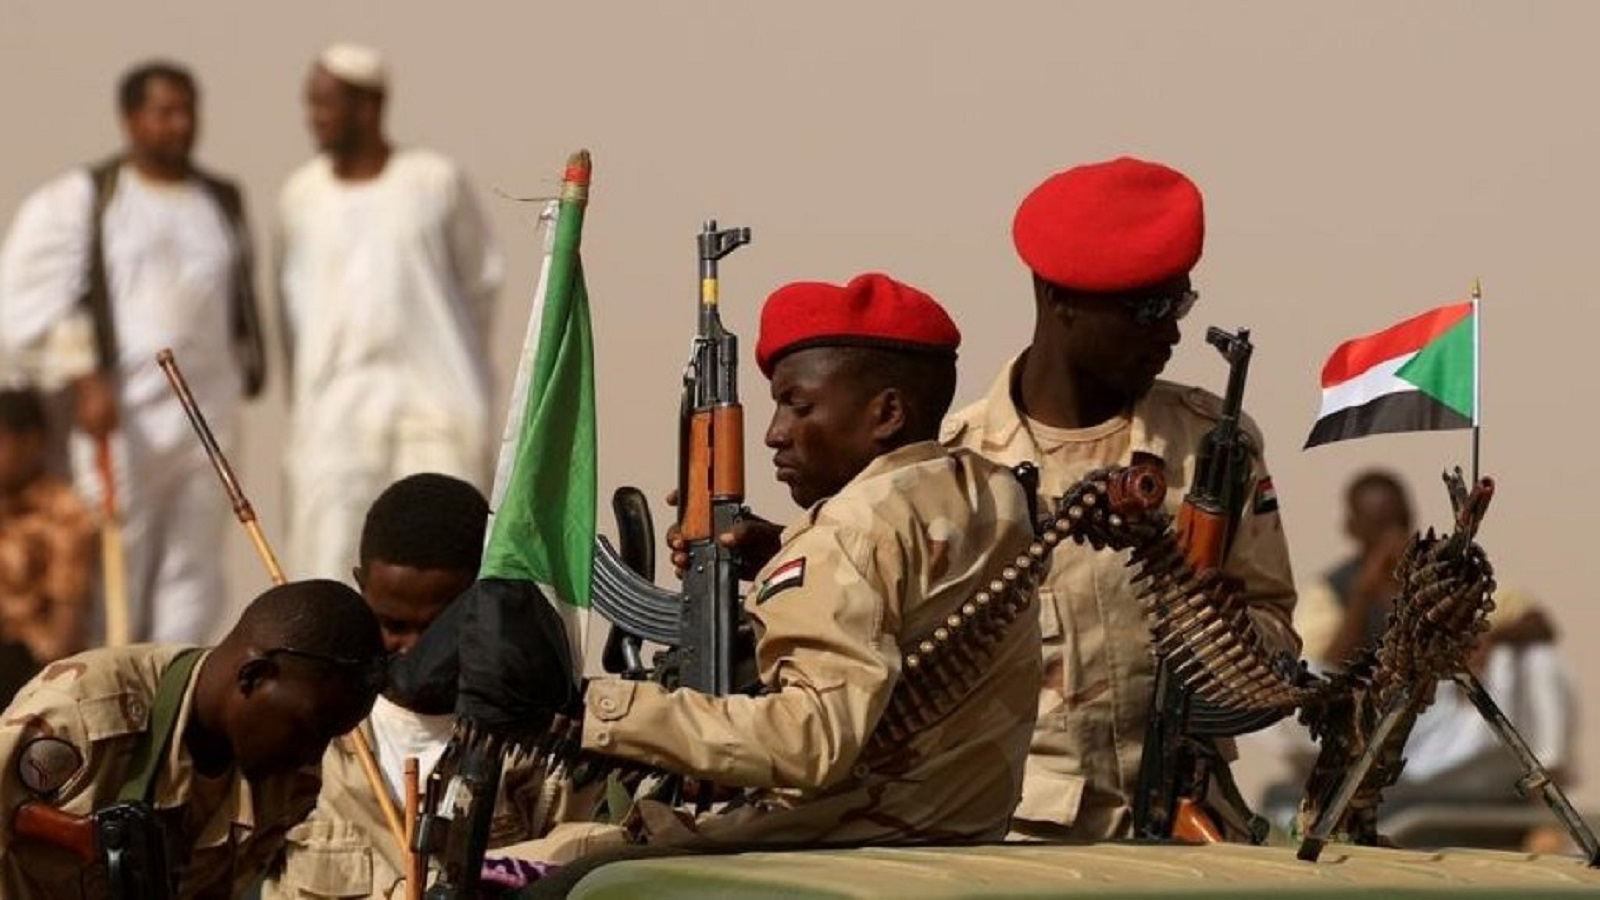 السودان: "الوحشية" الموثقة تنتشر بعد عودة الانترنت